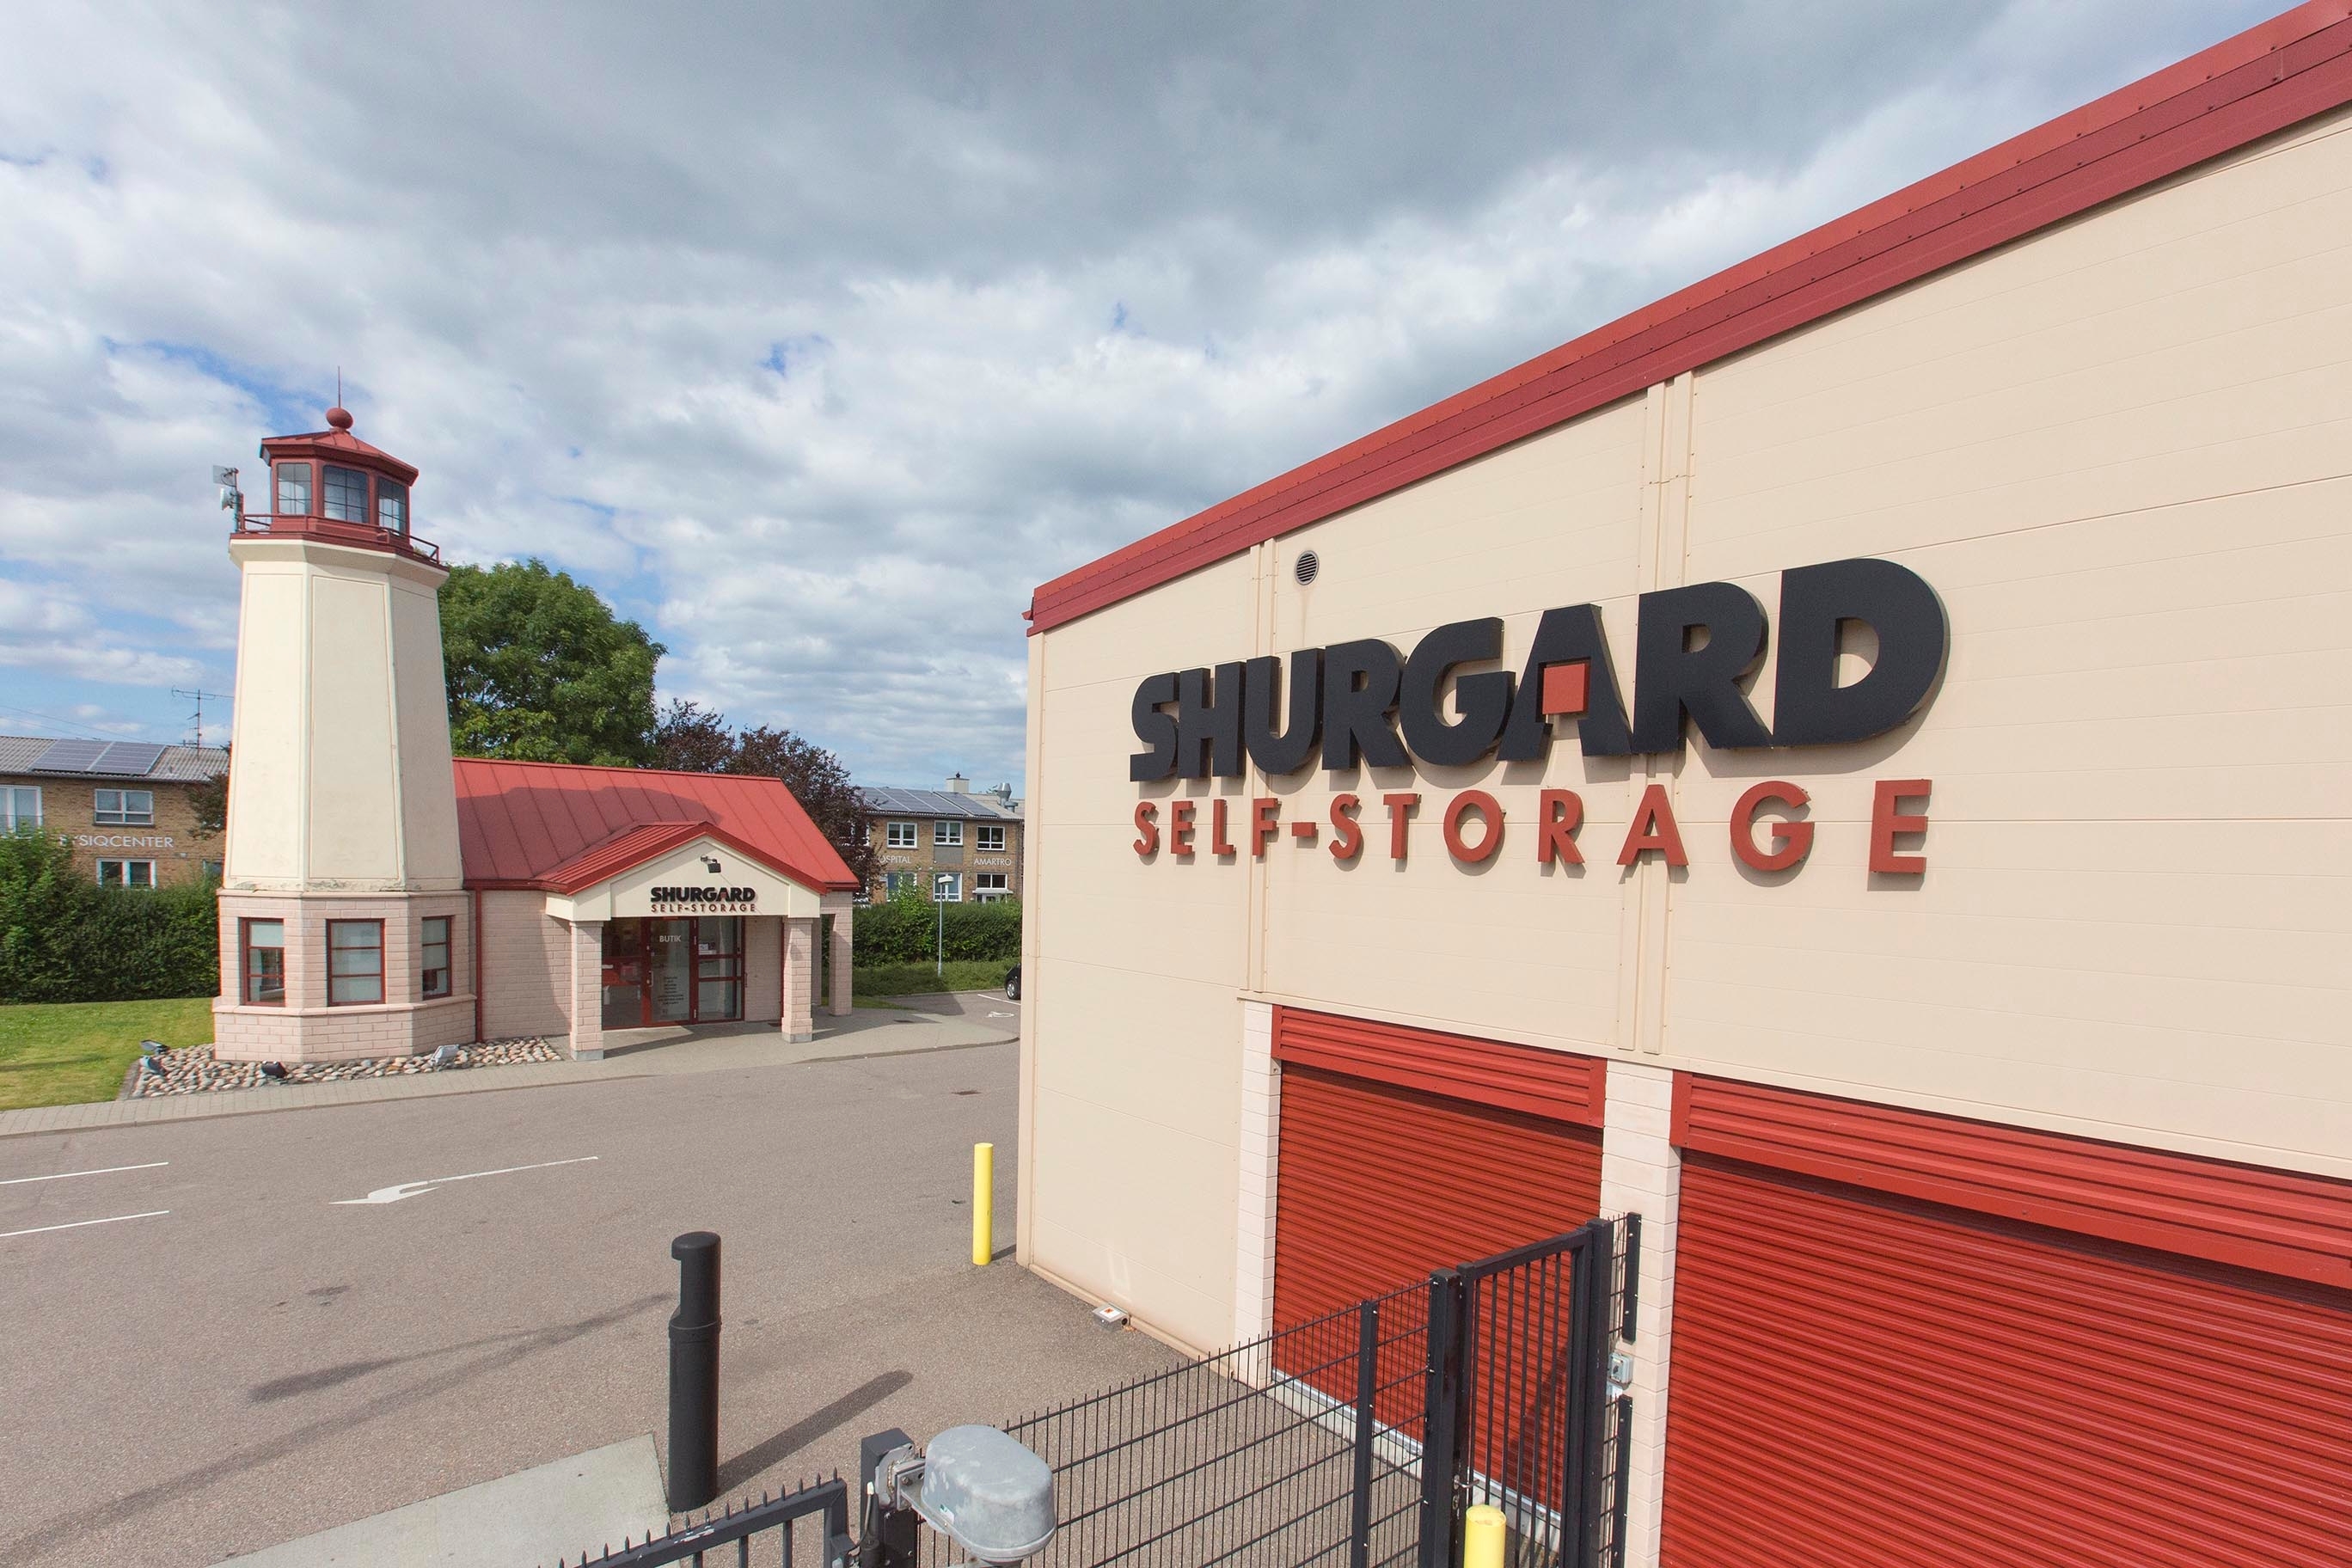 Shurgard Self Storage Tårnby - Amager Oplagringsvirksomhed, pakhusvirksomhed, Tårnby - 3